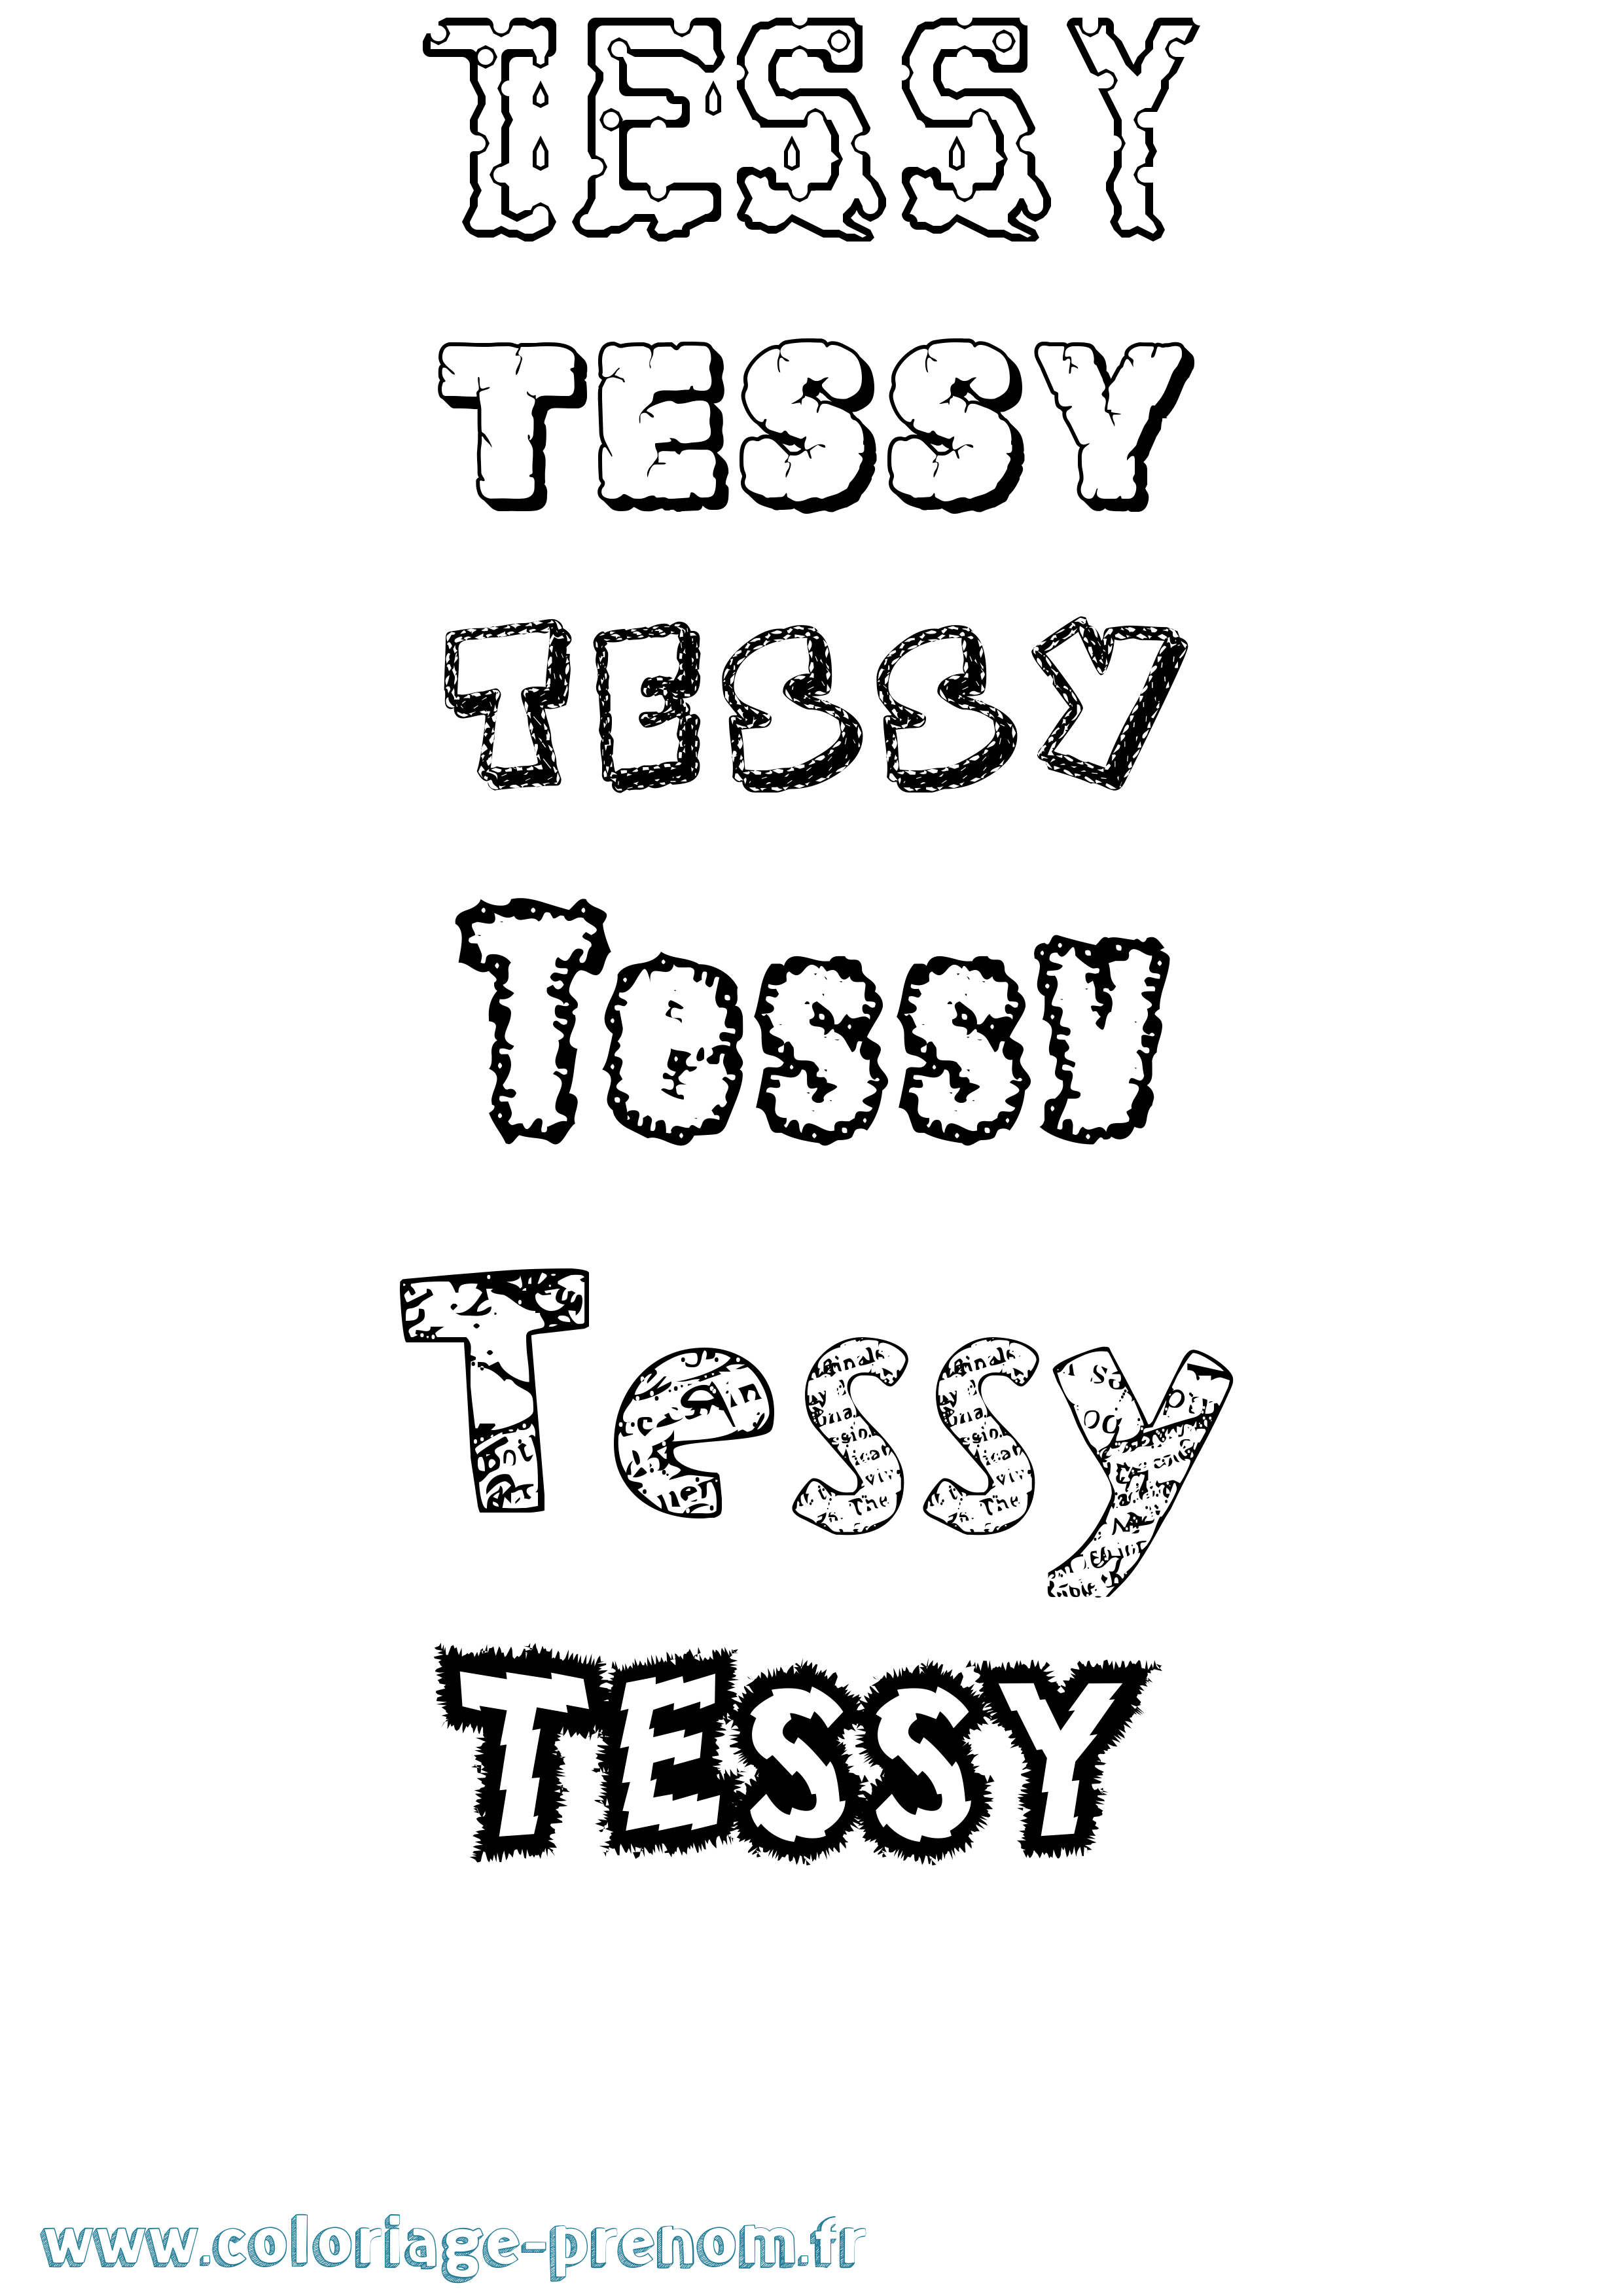 Coloriage prénom Tessy Destructuré